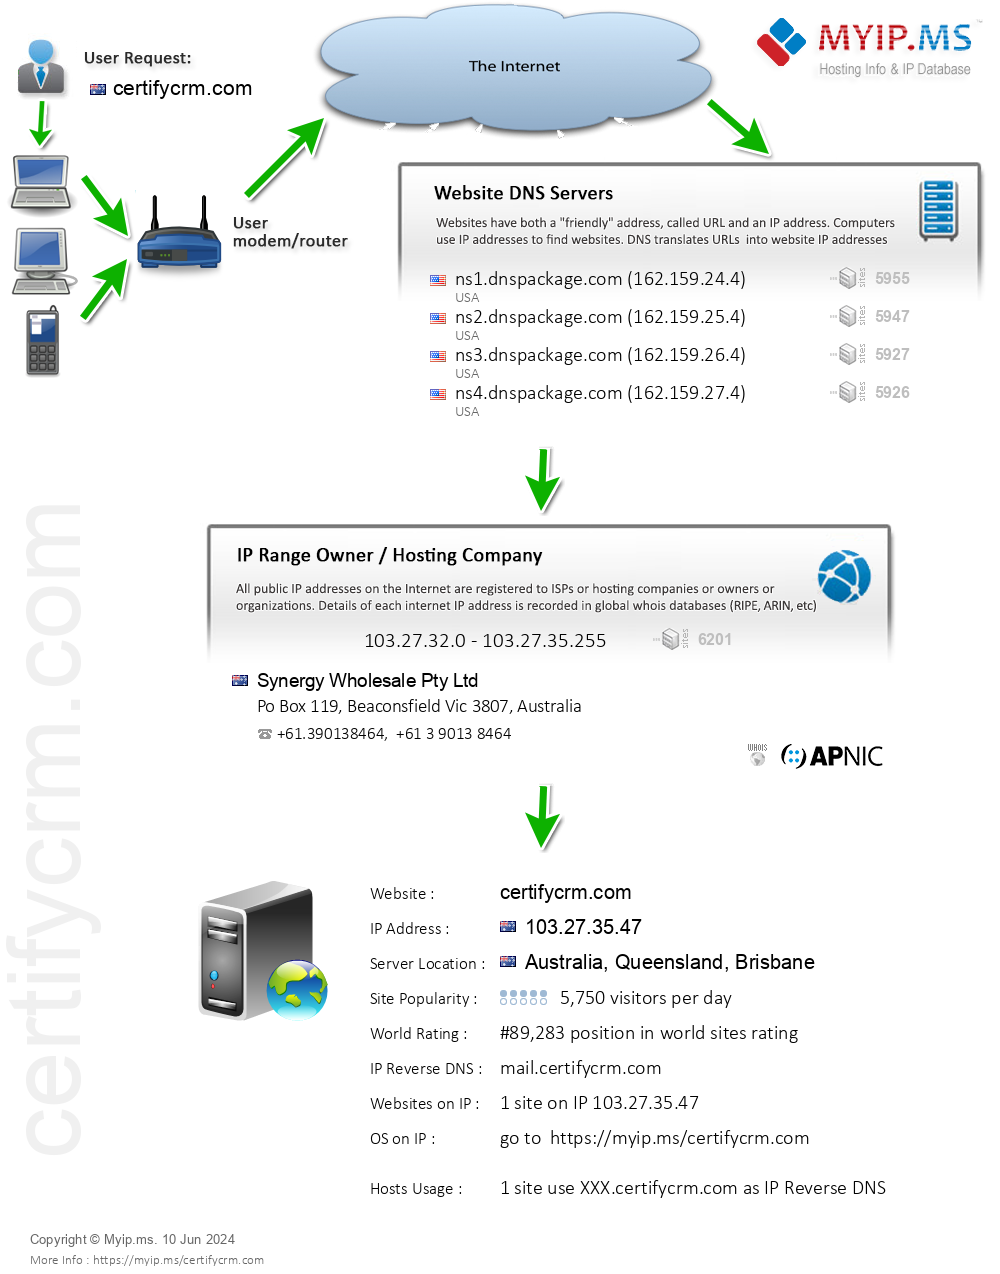 Certifycrm.com - Website Hosting Visual IP Diagram